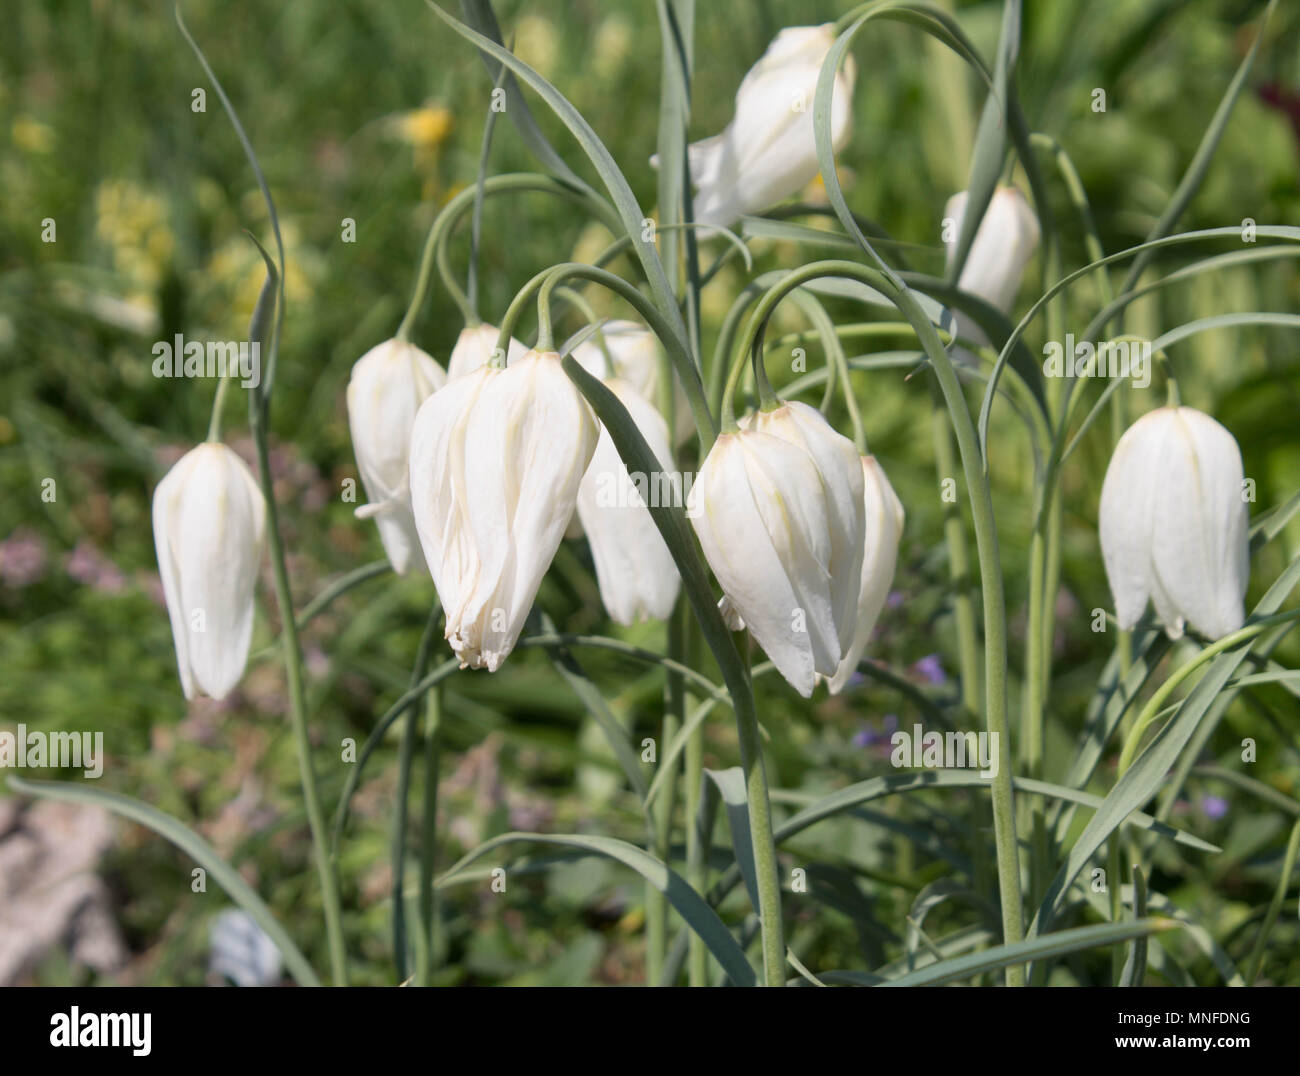 Weiße Blumen Glocken im grünen Gras Stockfotografie - Alamy